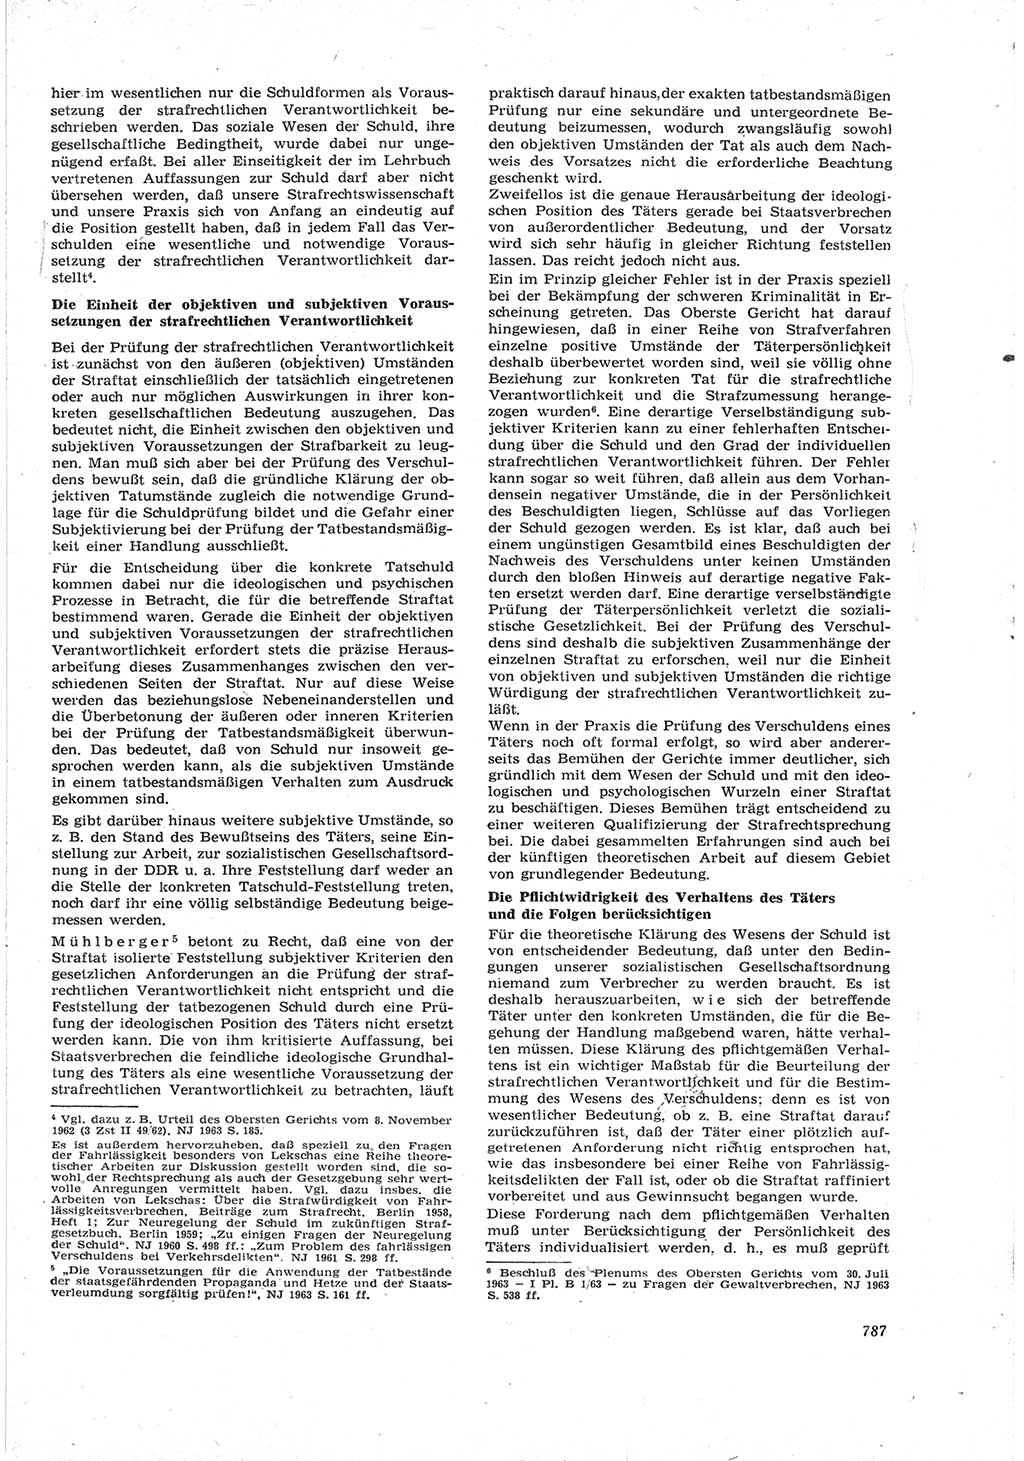 Neue Justiz (NJ), Zeitschrift für Recht und Rechtswissenschaft [Deutsche Demokratische Republik (DDR)], 17. Jahrgang 1963, Seite 787 (NJ DDR 1963, S. 787)